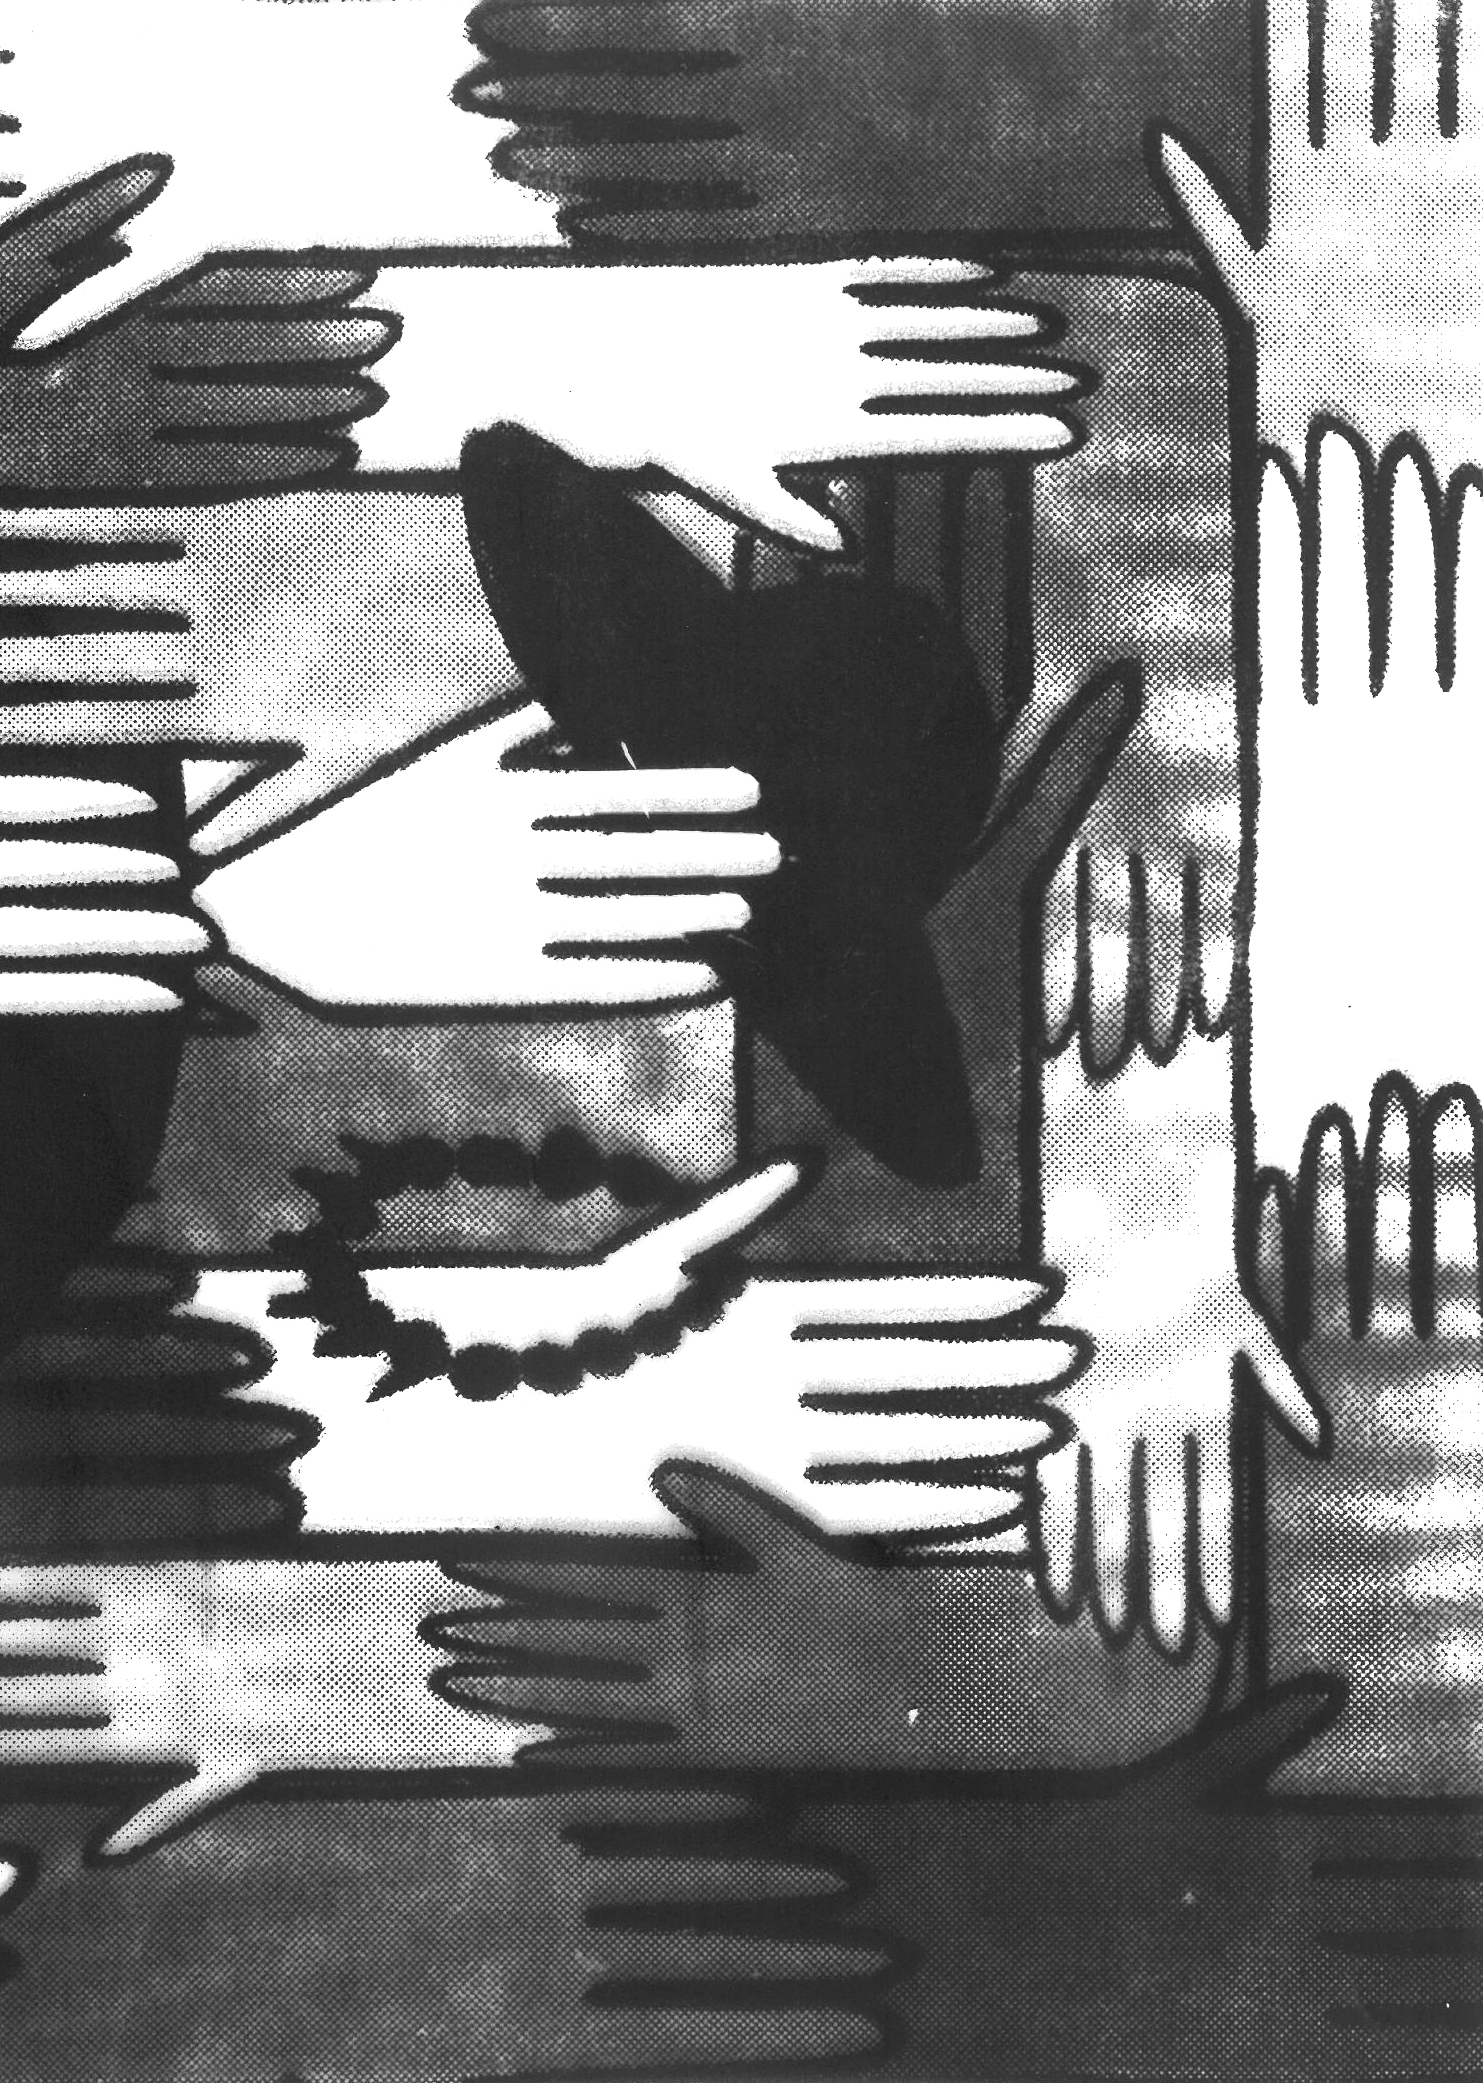 Grafika na folii pleksi, z wizerunkiem wielu dłoni, w środkowej części kompozycji jedna z dłoni trzyma kapelusz oraz bransoletkę